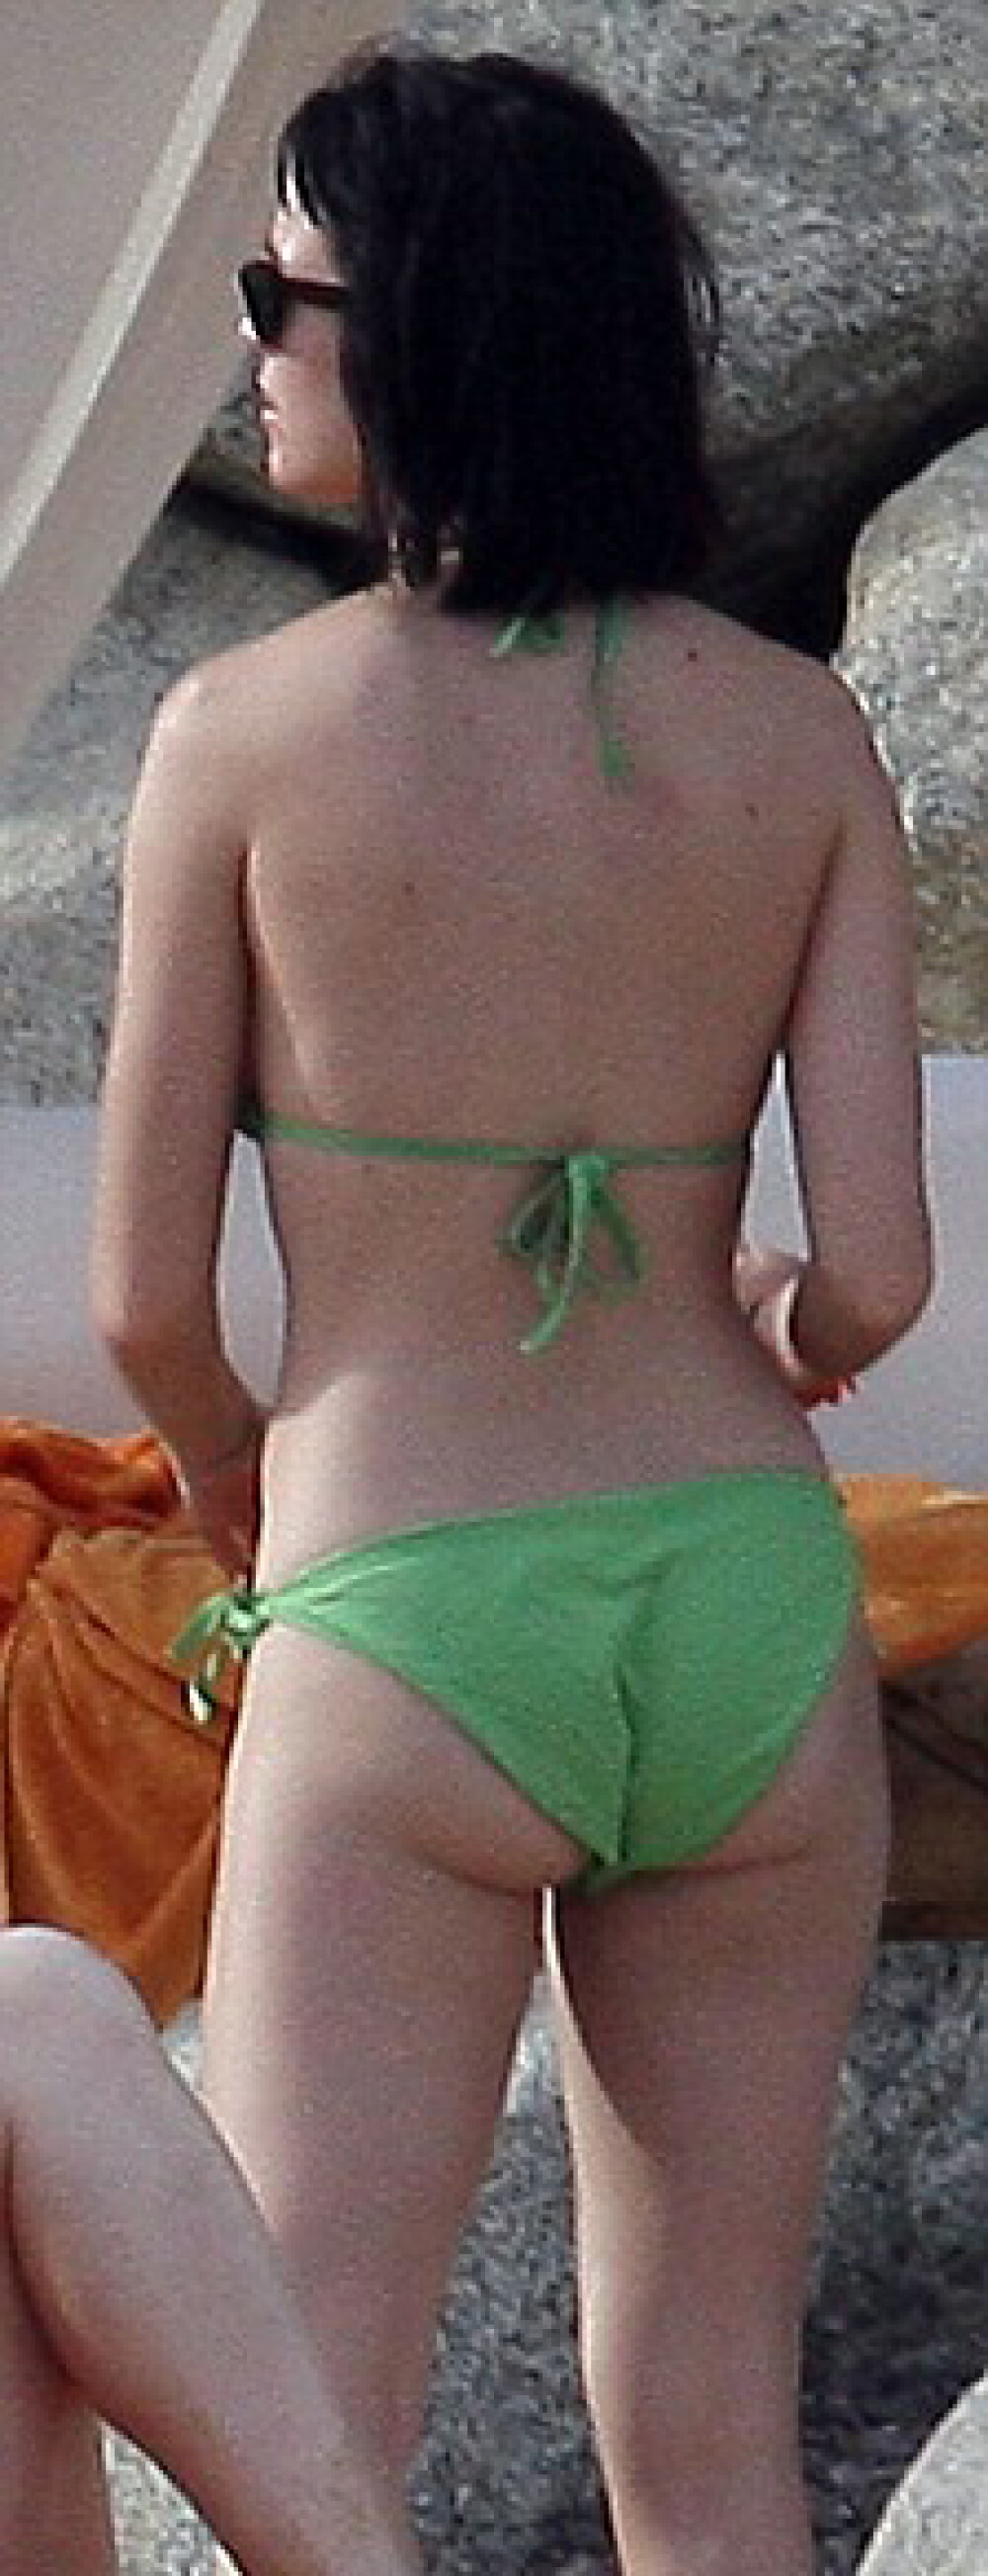 Katy Perry isi arata formele pe plaja - Imaginea 3